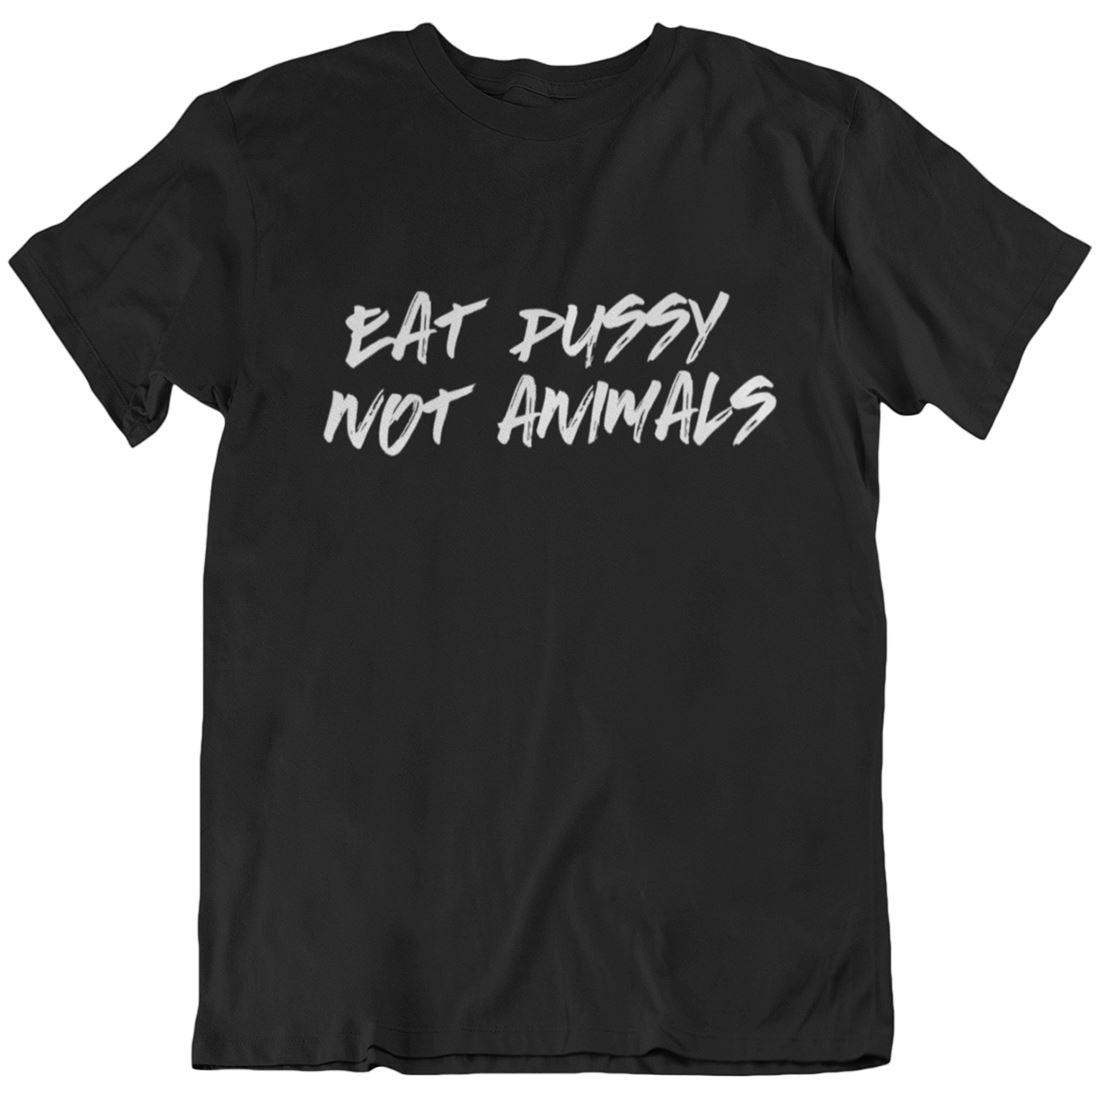 Eat pussy not animals - Unisex Organic Shirt Rocker T-Shirt ST/ST Shirtee Schwarz S 